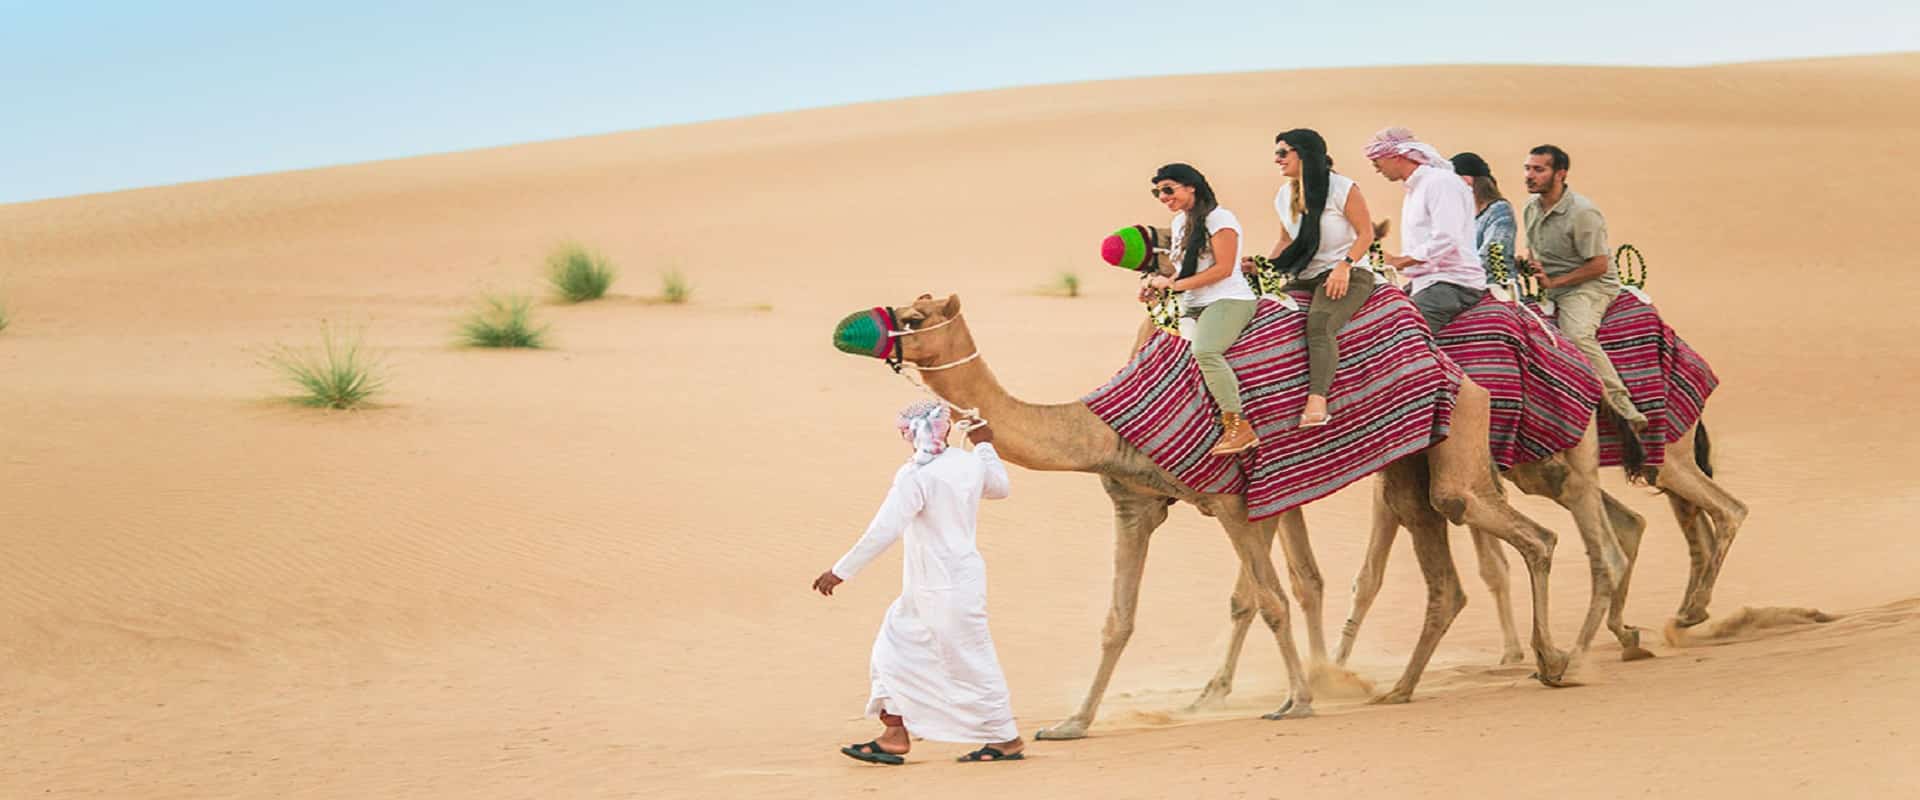 Balade à dos de chameau dans le désert de Dubaï